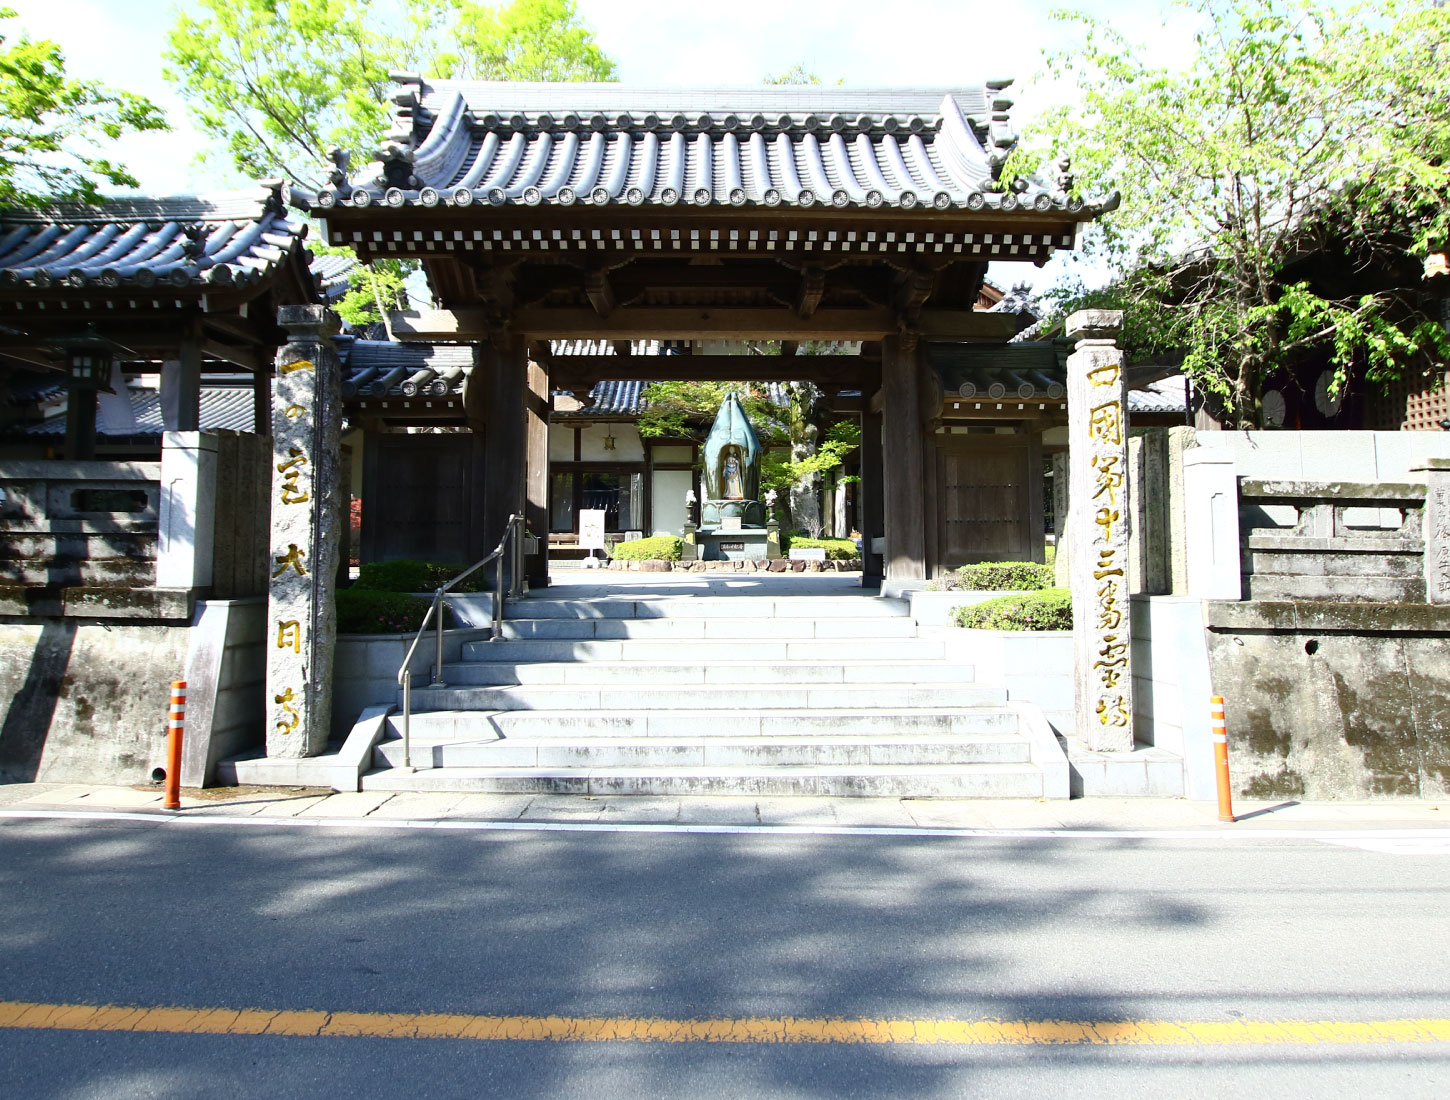 Oguriyama Hanazo-in Temple